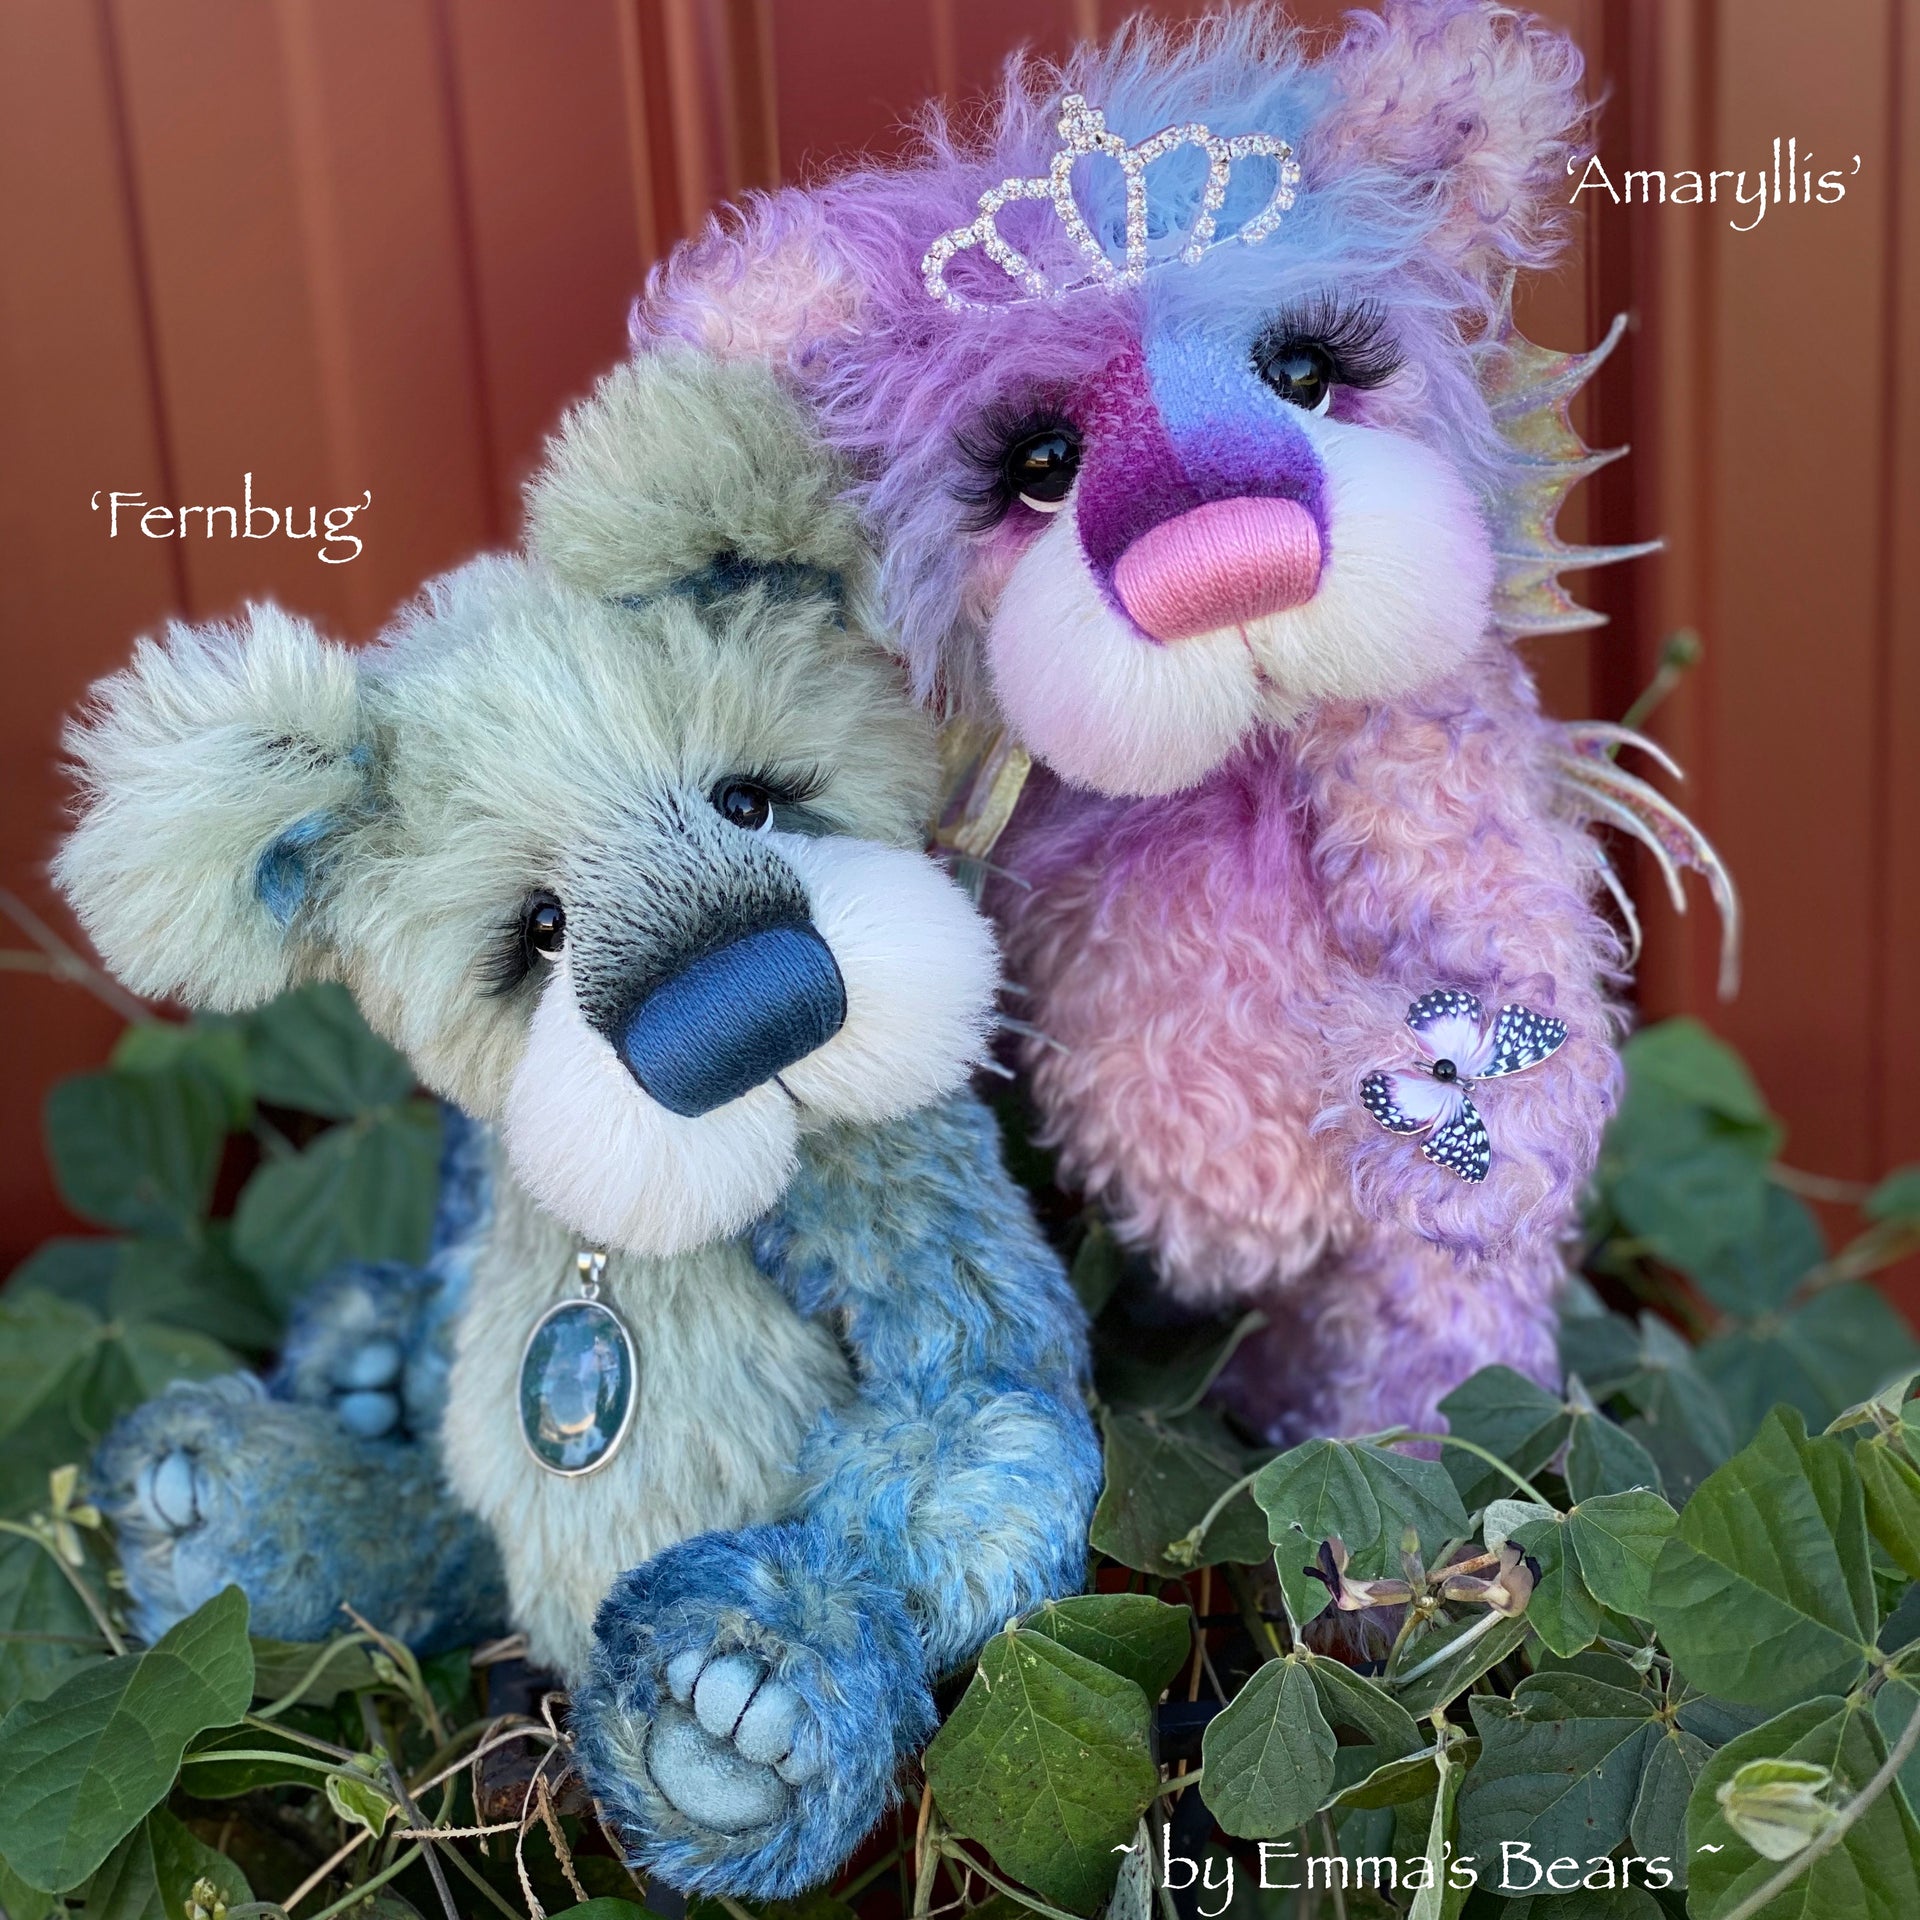 Fernbug - 11" Mohair and Alpaca artist bear by Emma's Bears - OOAK